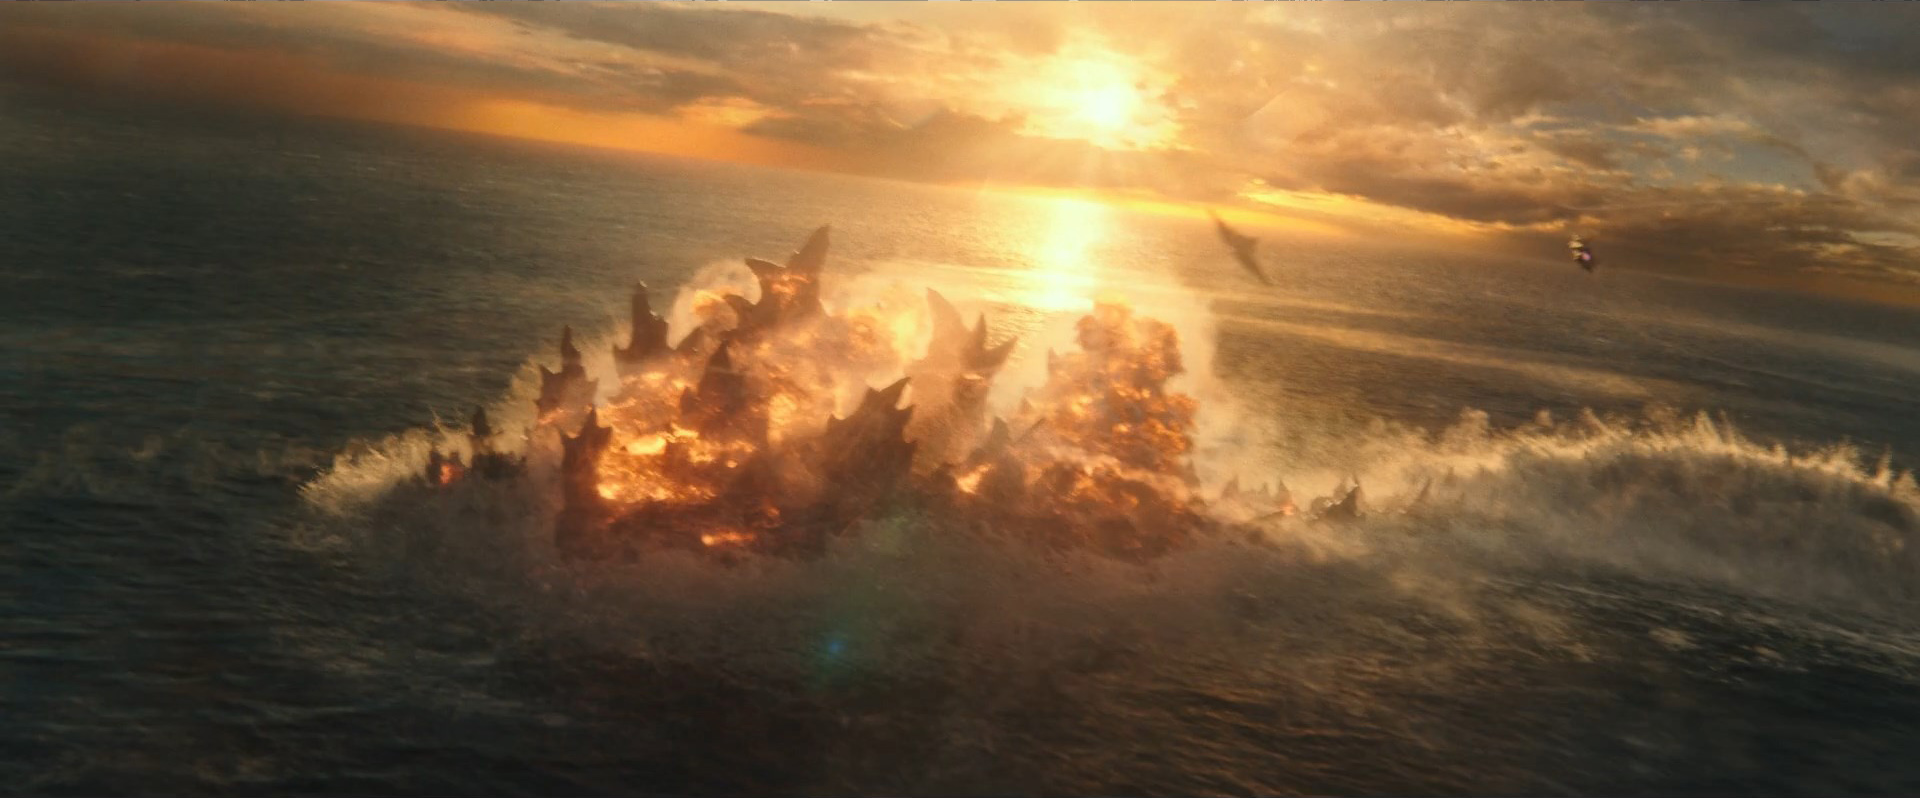 Godzilla vs Kong Trailer Still 29 - Explosion